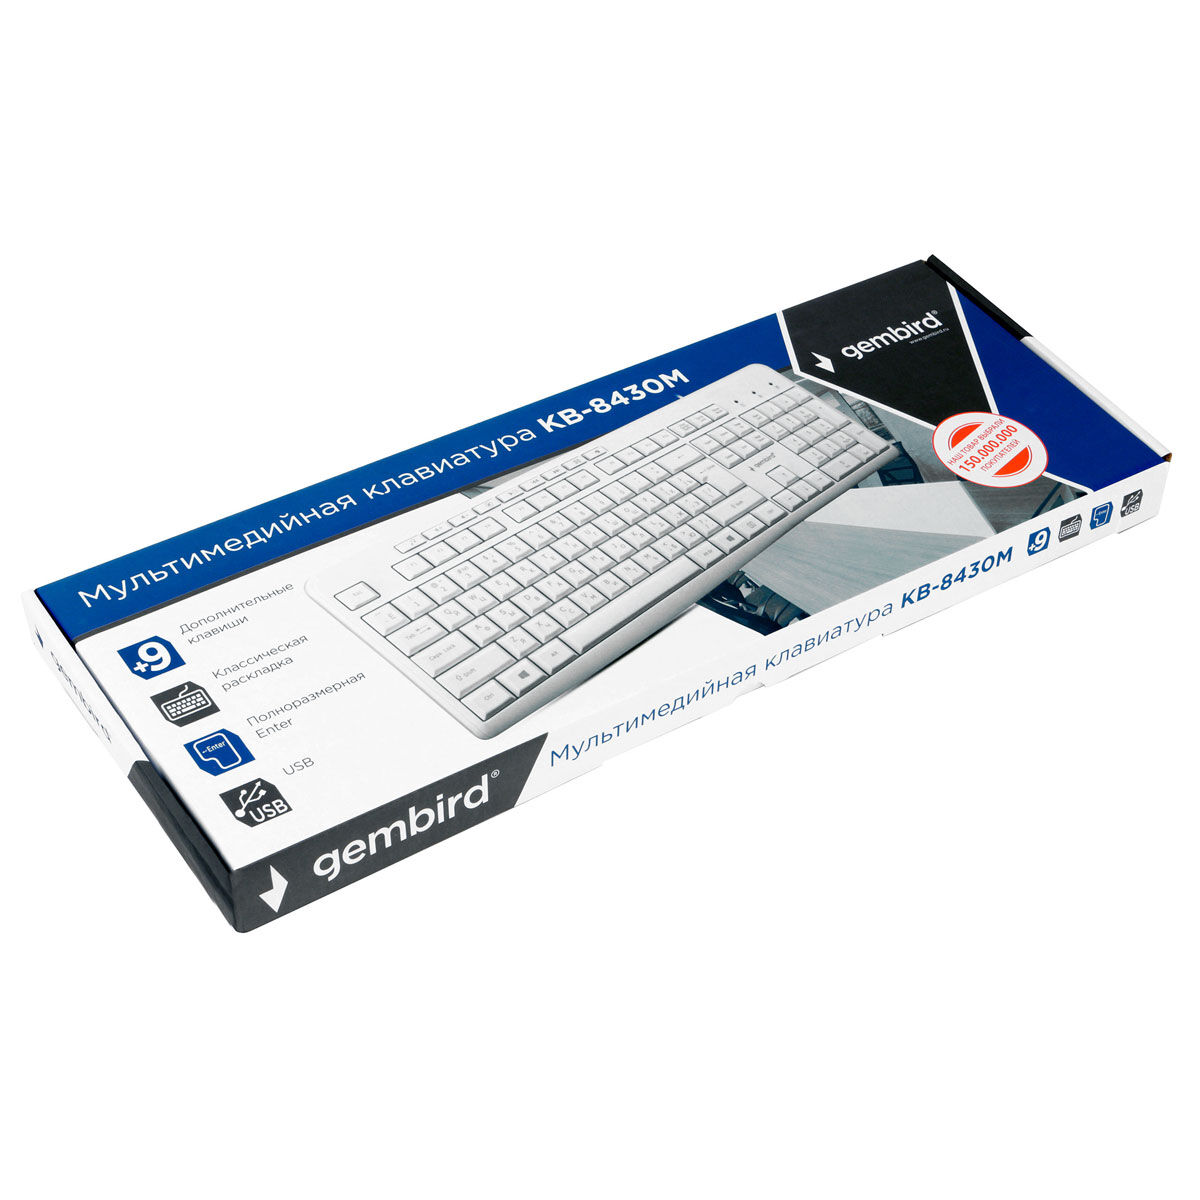 Клавиатура проводная Gembird KB-8430M, мембранная, 113 клавиш, мультимедиа, 9 доп. клавиш, кабель 1.5м, белая 8